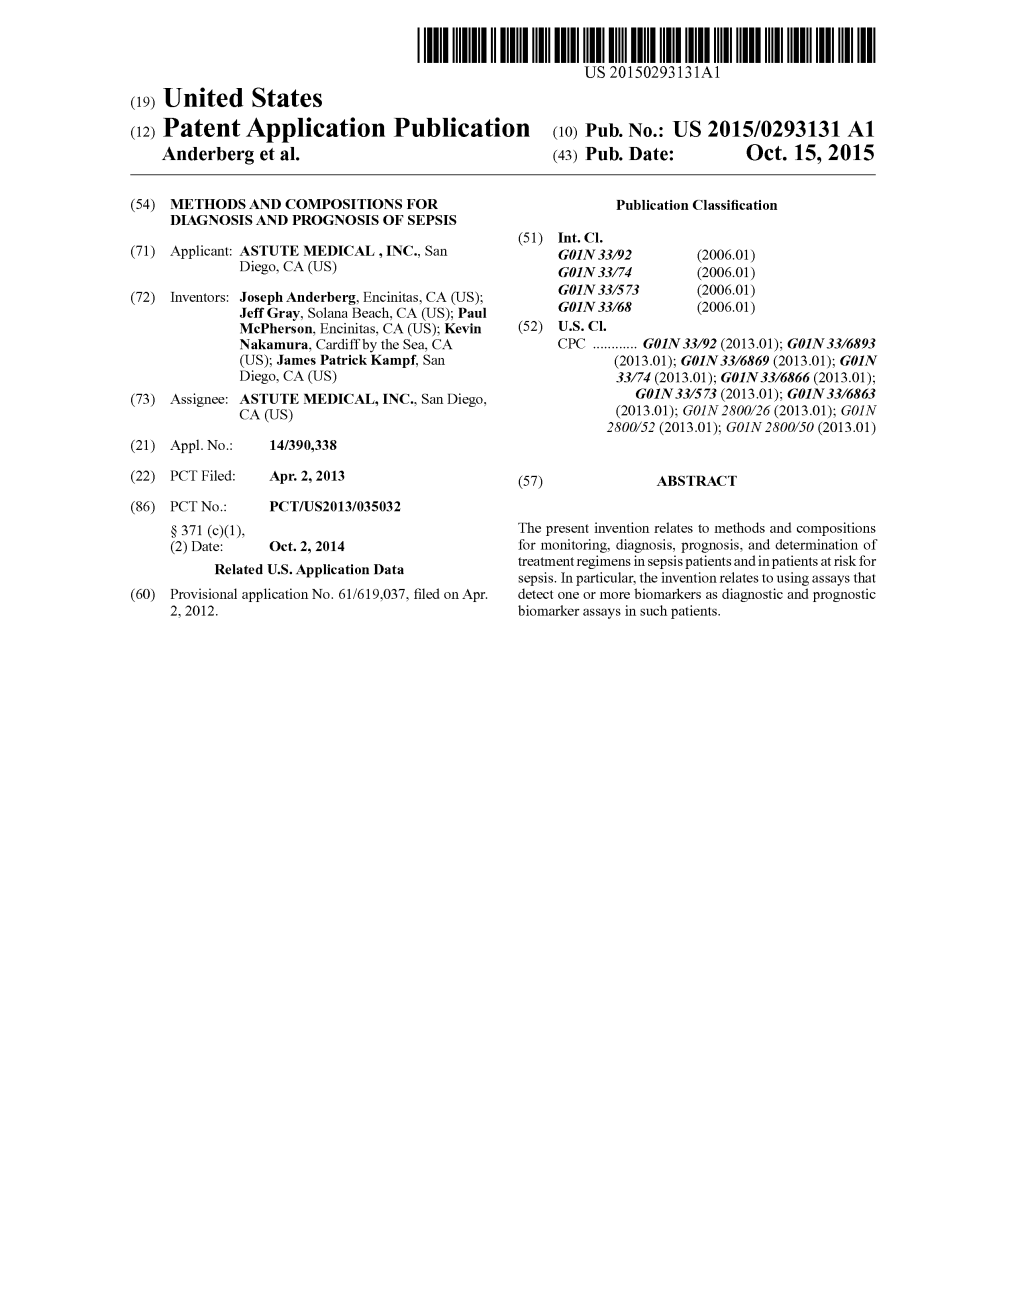 (12) Patent Application Publication (10) Pub. No.: US 2015/0293131 A1 Anderberg Et Al